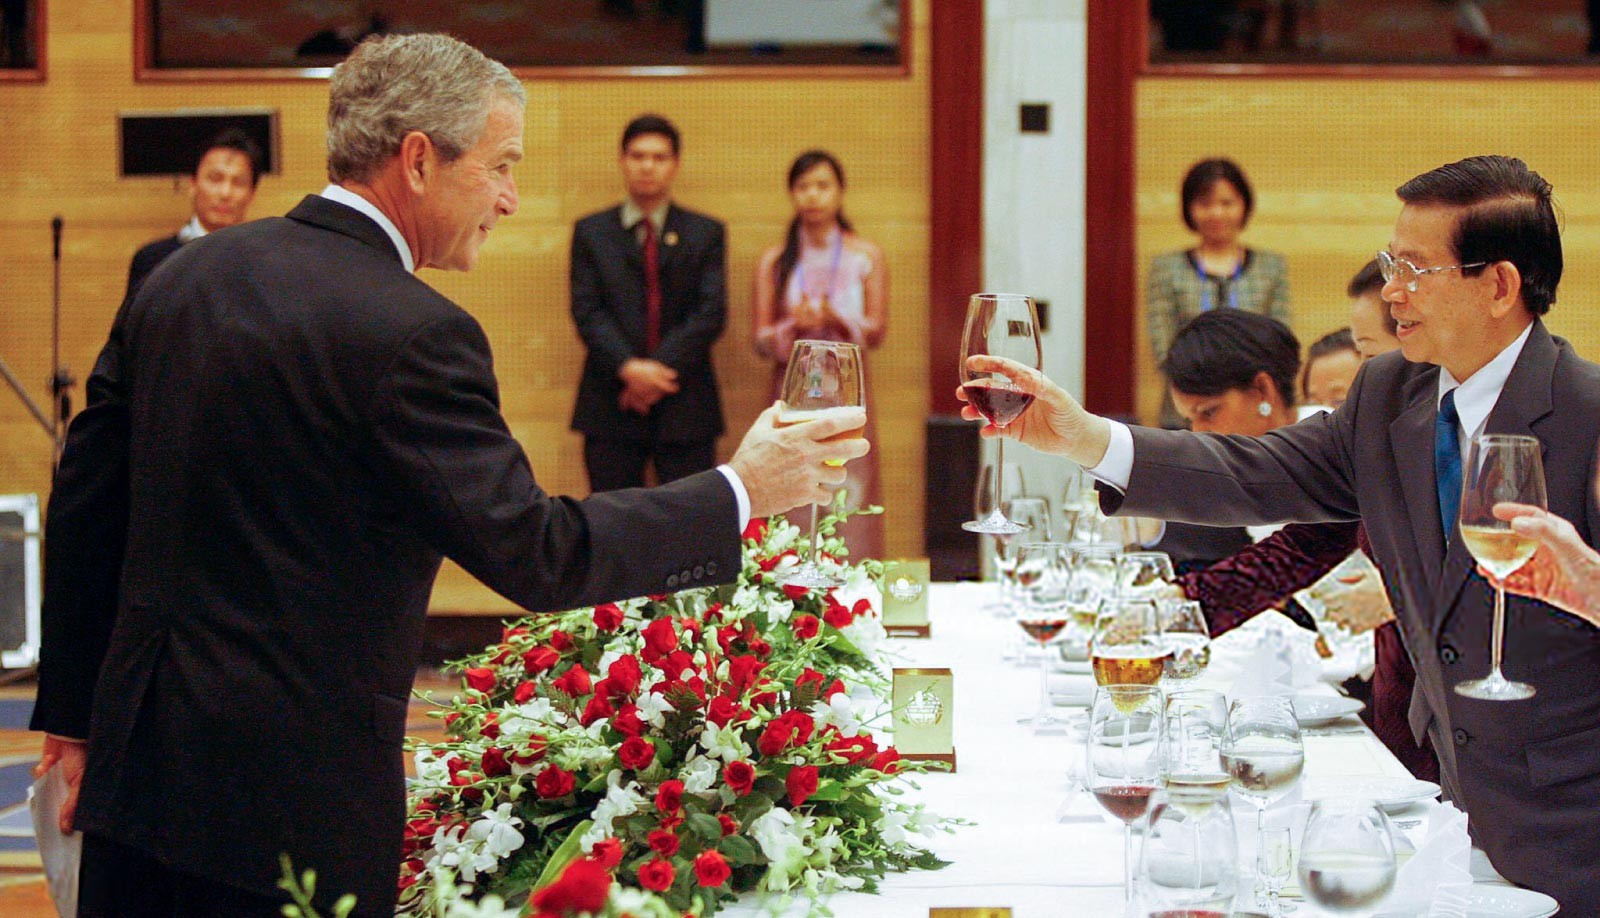 Tổng thống Hoa Kỳ George W. Bush nâng ly chúc mừng Chủ tịch nước Việt Nam Nguyễn Minh Triết (phải) trong bữa tiệc chiêu đãi cấp nhà nước ngày 17 tháng 11 năm 2006 tại Trung tâm Hội nghị Quốc tế ở Hà Nội.